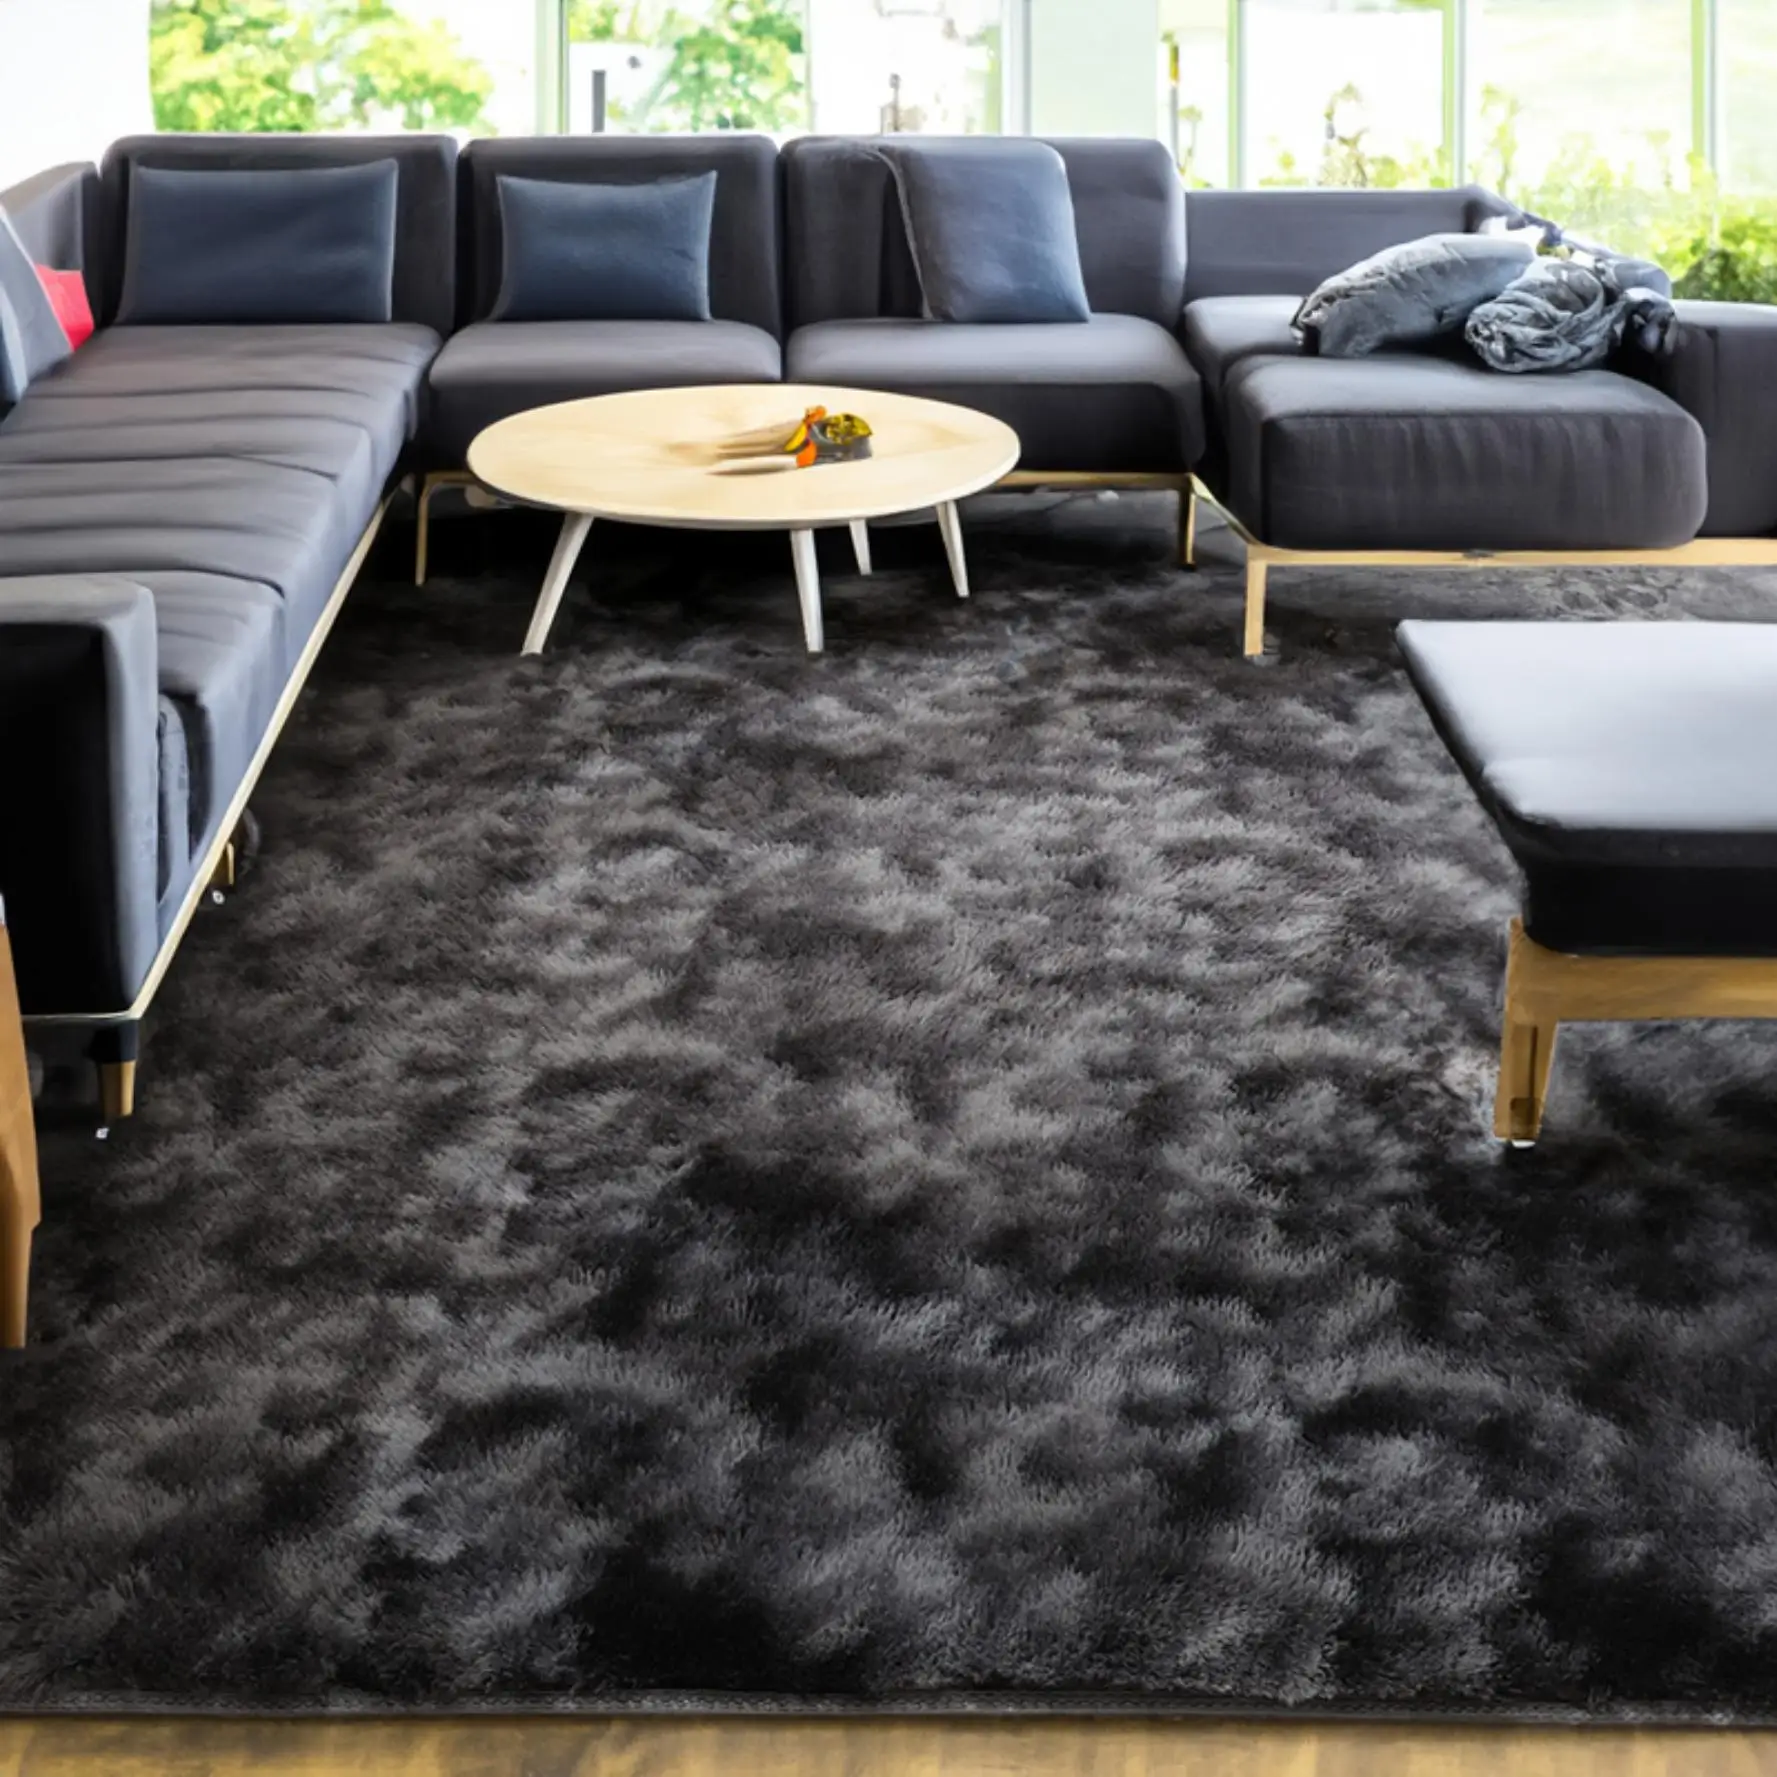 Pile High Carpet Floor Carpet Modern Rugs For Living Room Large Rabbit ...